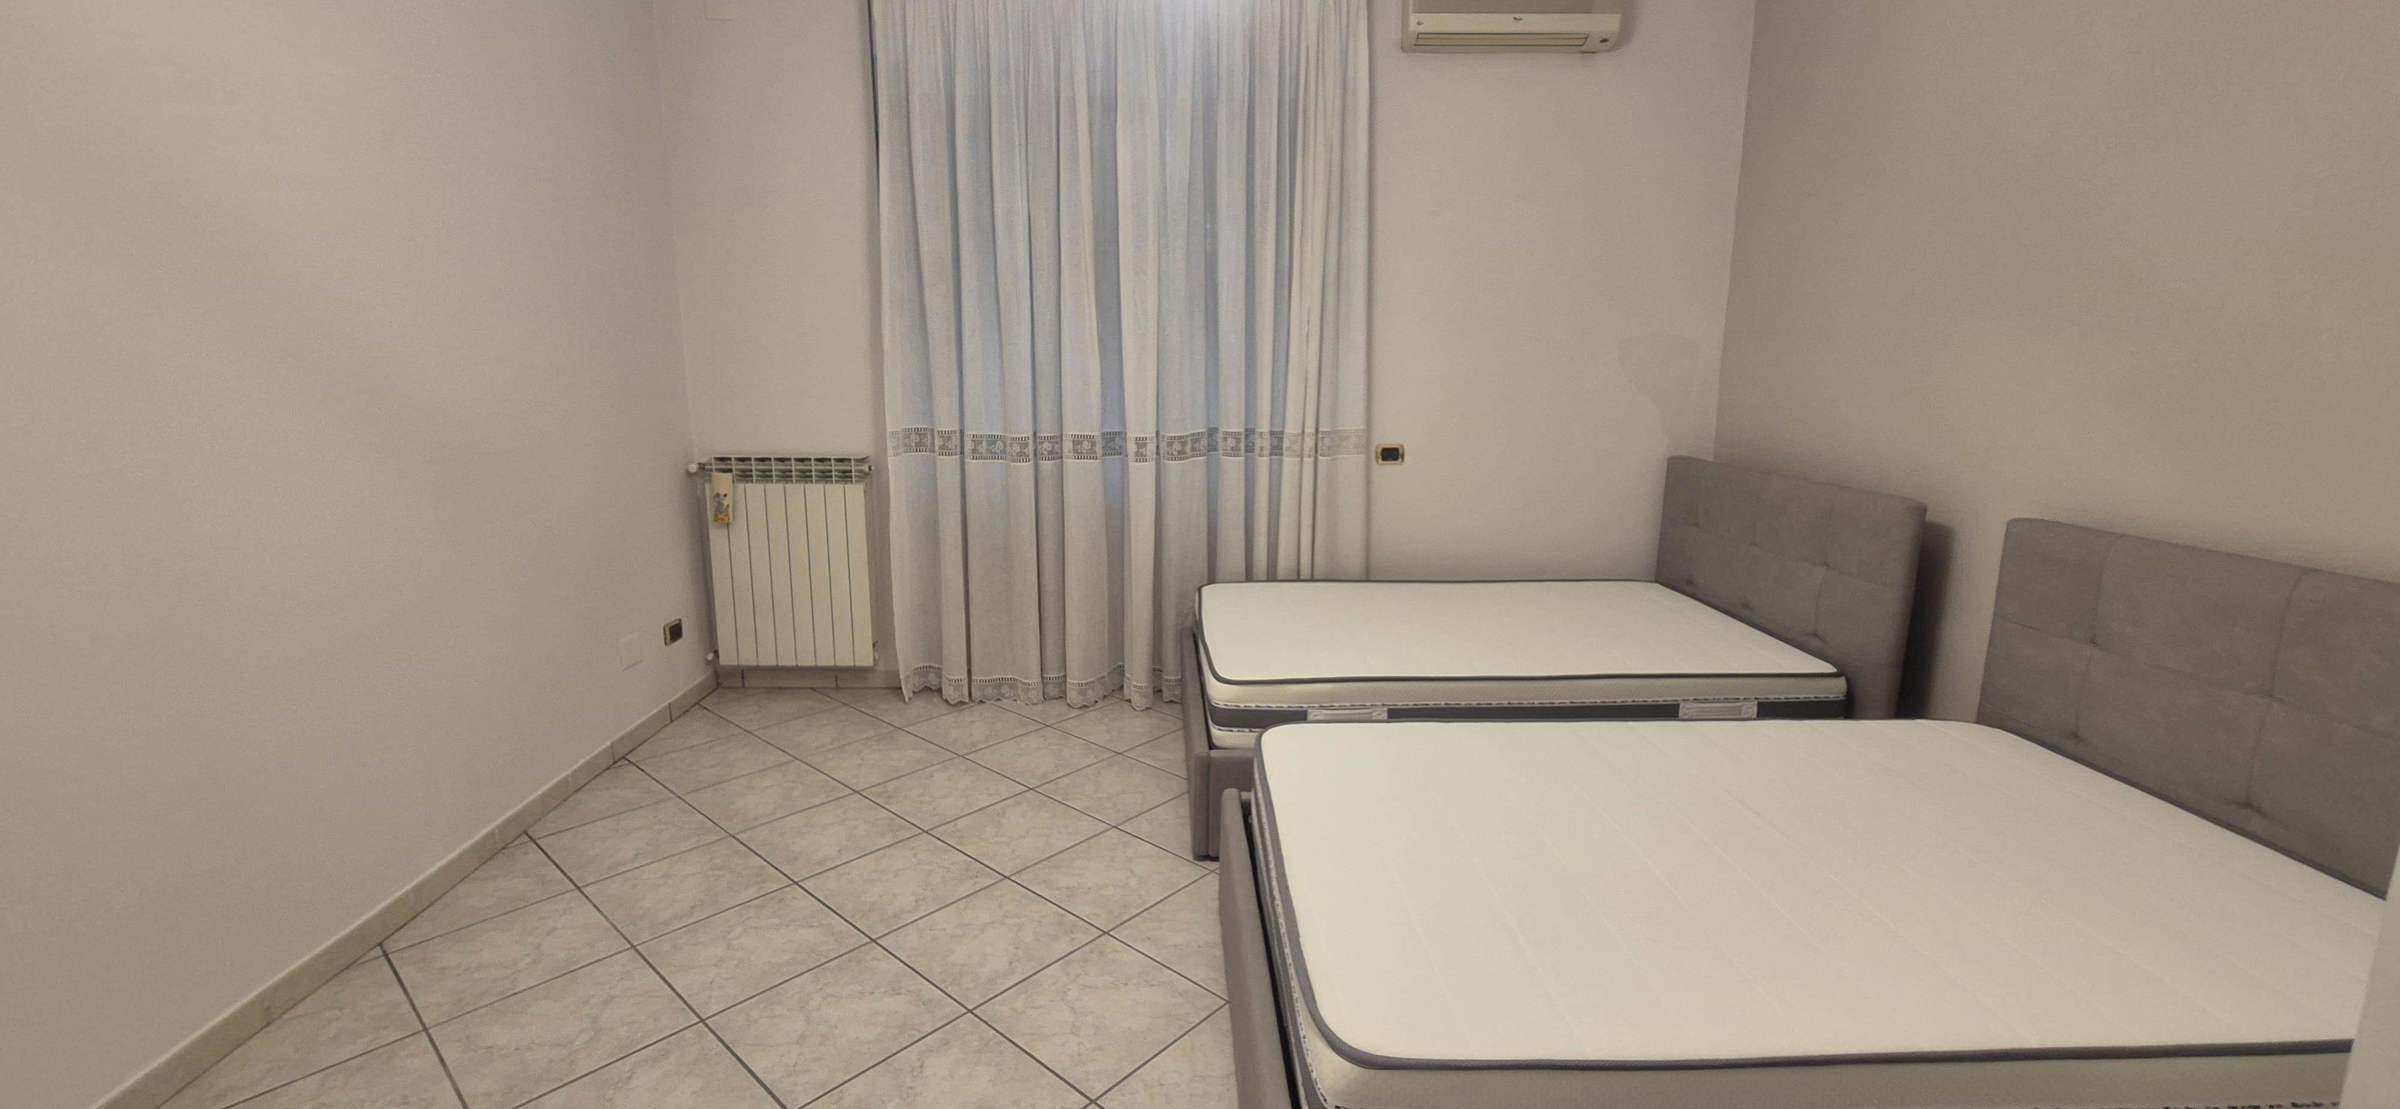 Appartamento di 80 mq in affitto - Pomigliano d'Arco